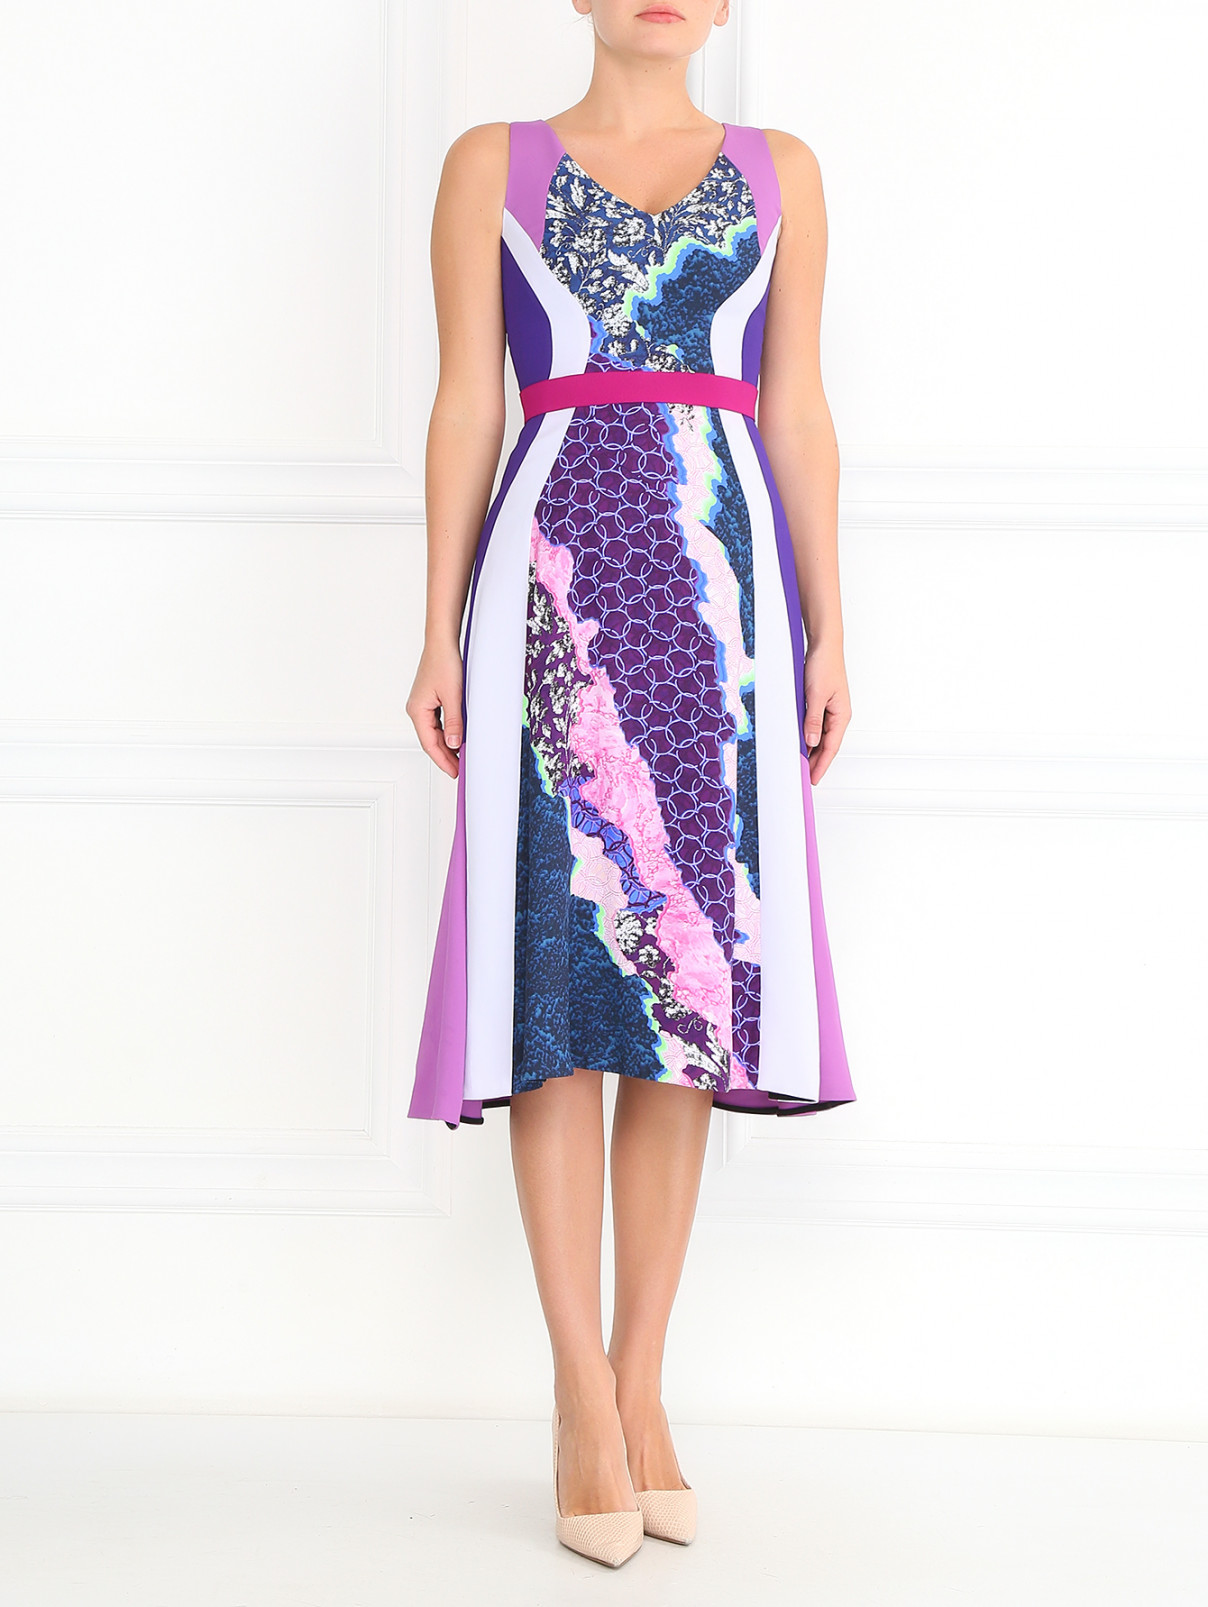 Платье без рукавов с абстрактным принтом Peter Pilotto  –  Модель Общий вид  – Цвет:  Узор